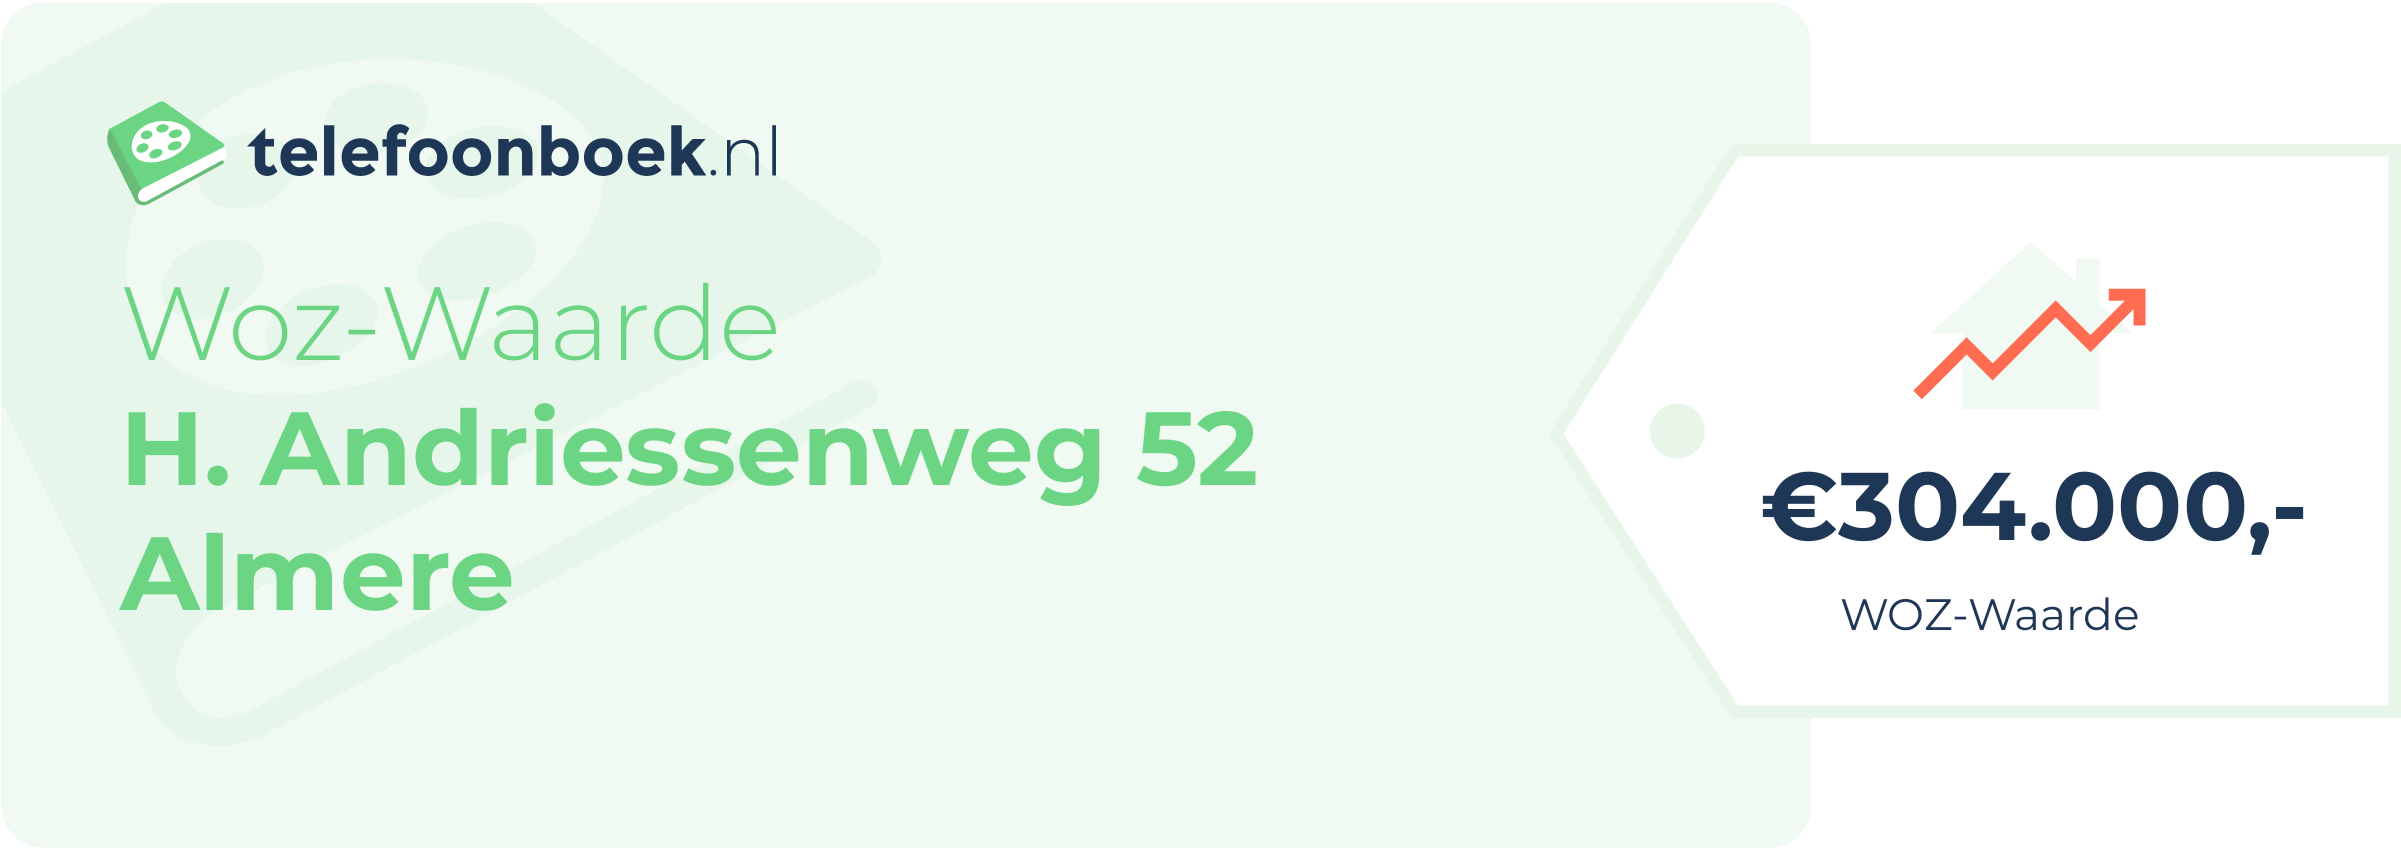 WOZ-waarde H. Andriessenweg 52 Almere